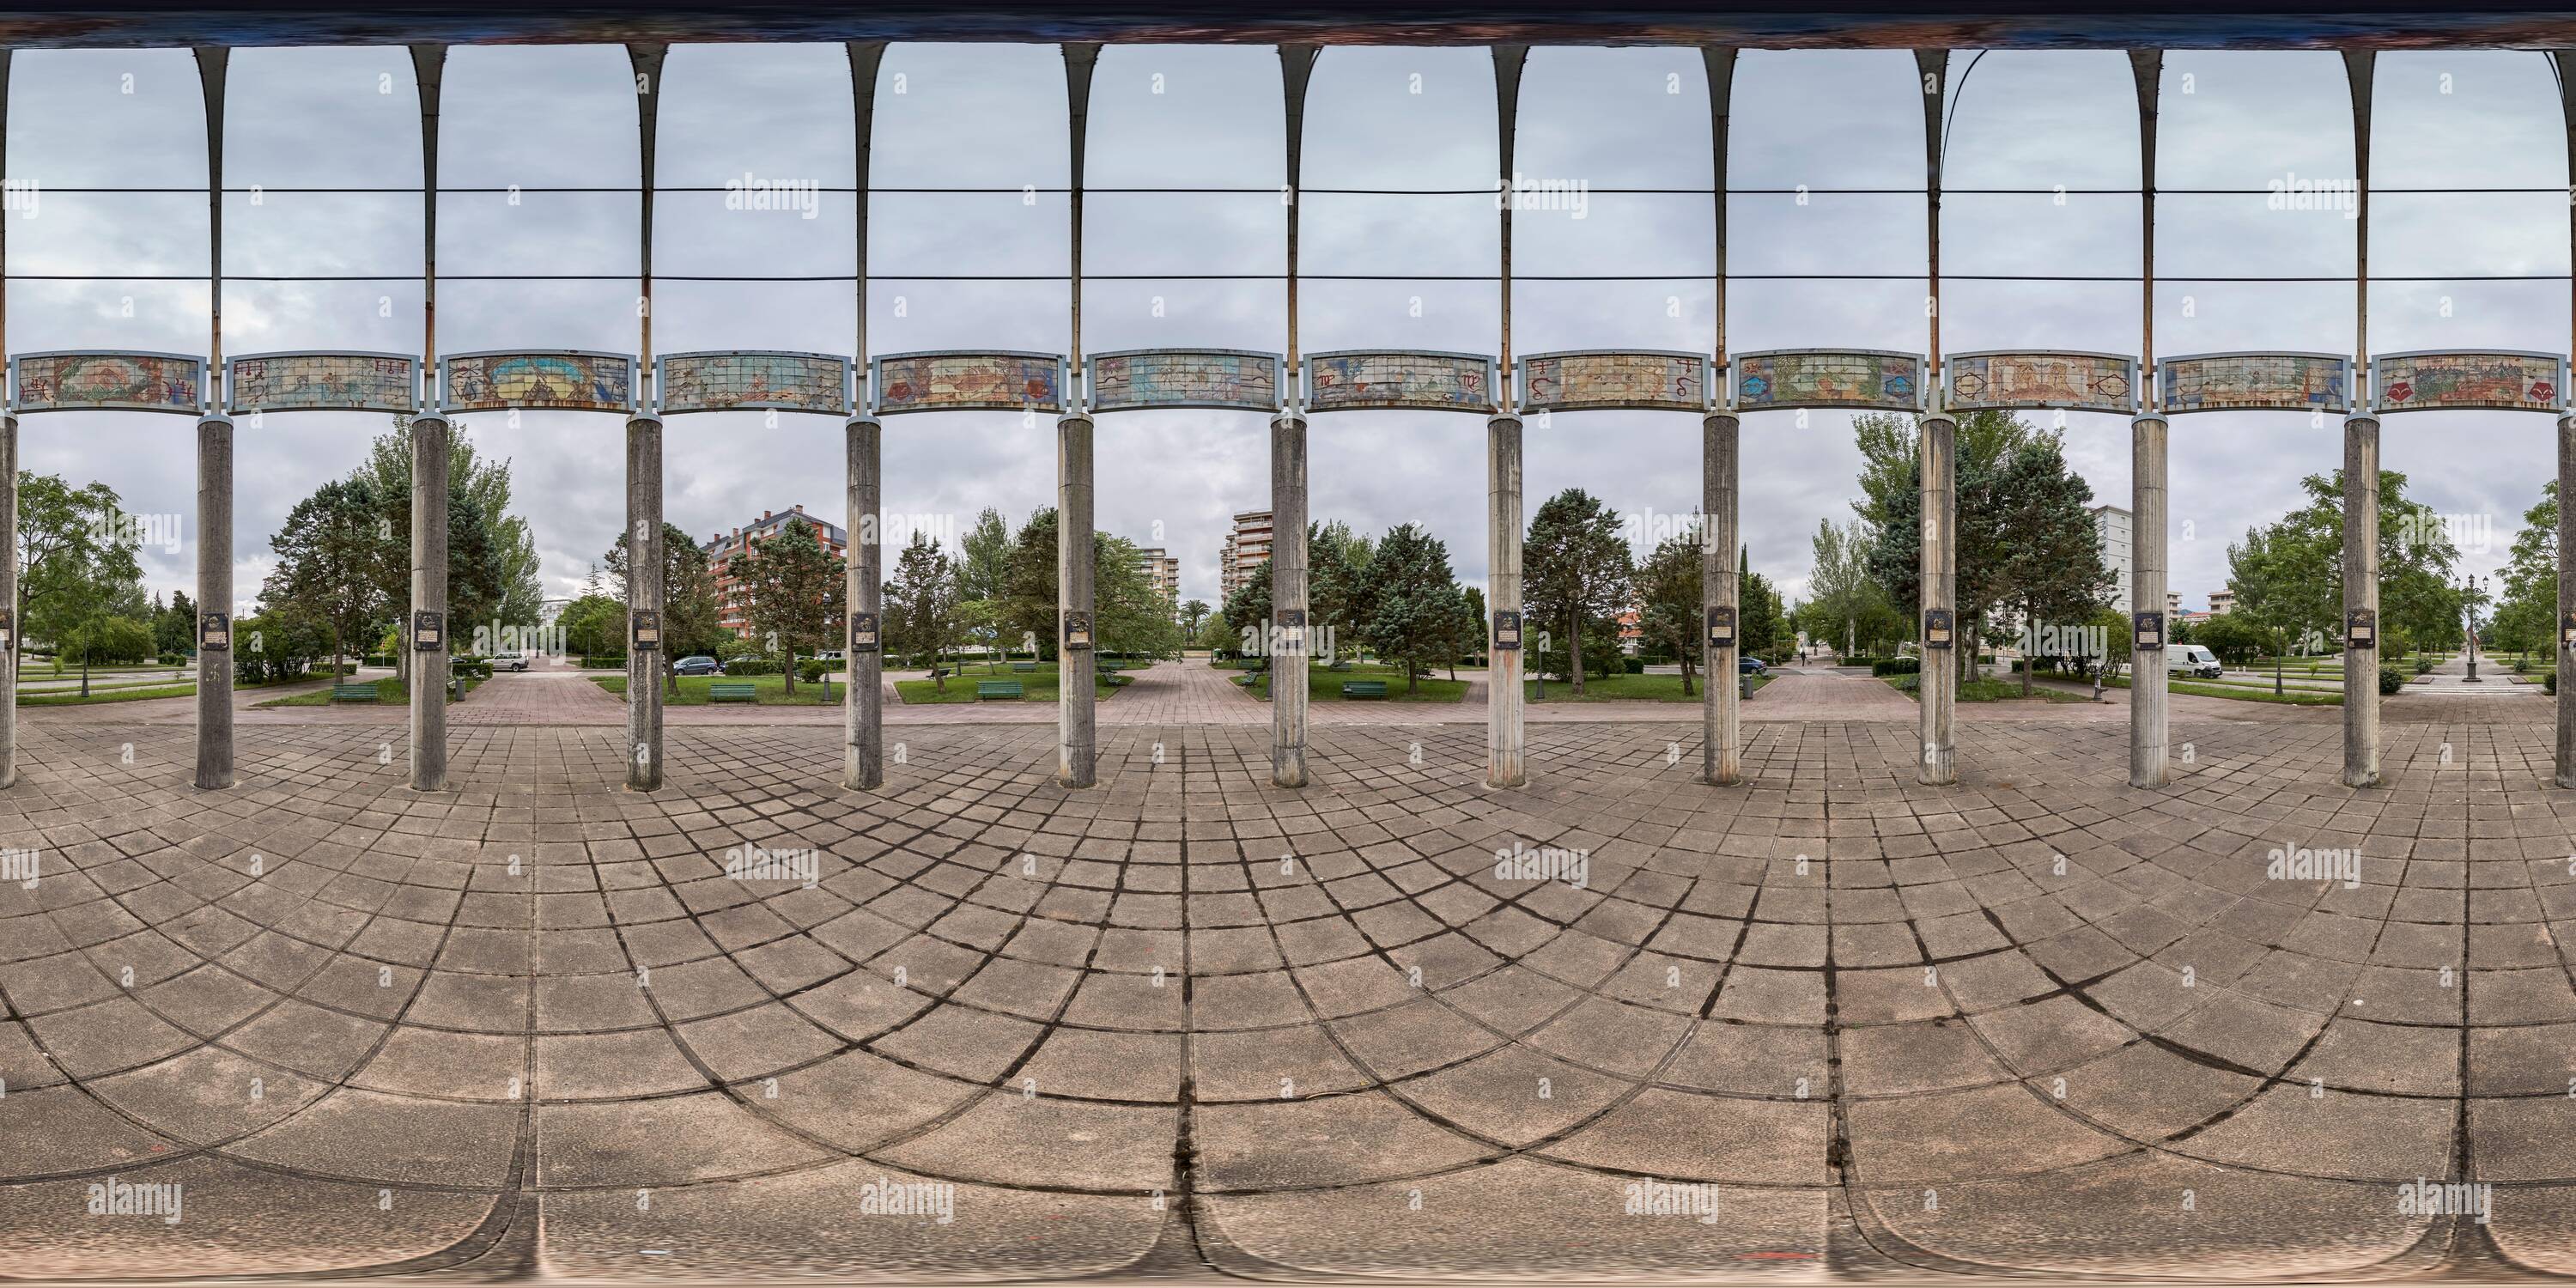 Visualizzazione panoramica a 360 gradi di 360 gradi panoramico: Monumento artistico di colonne con l'oroscopo e il pianeta Terra, nel Parco di Tres Laredos, Laredo, Cantabria, Spagna, Europa.